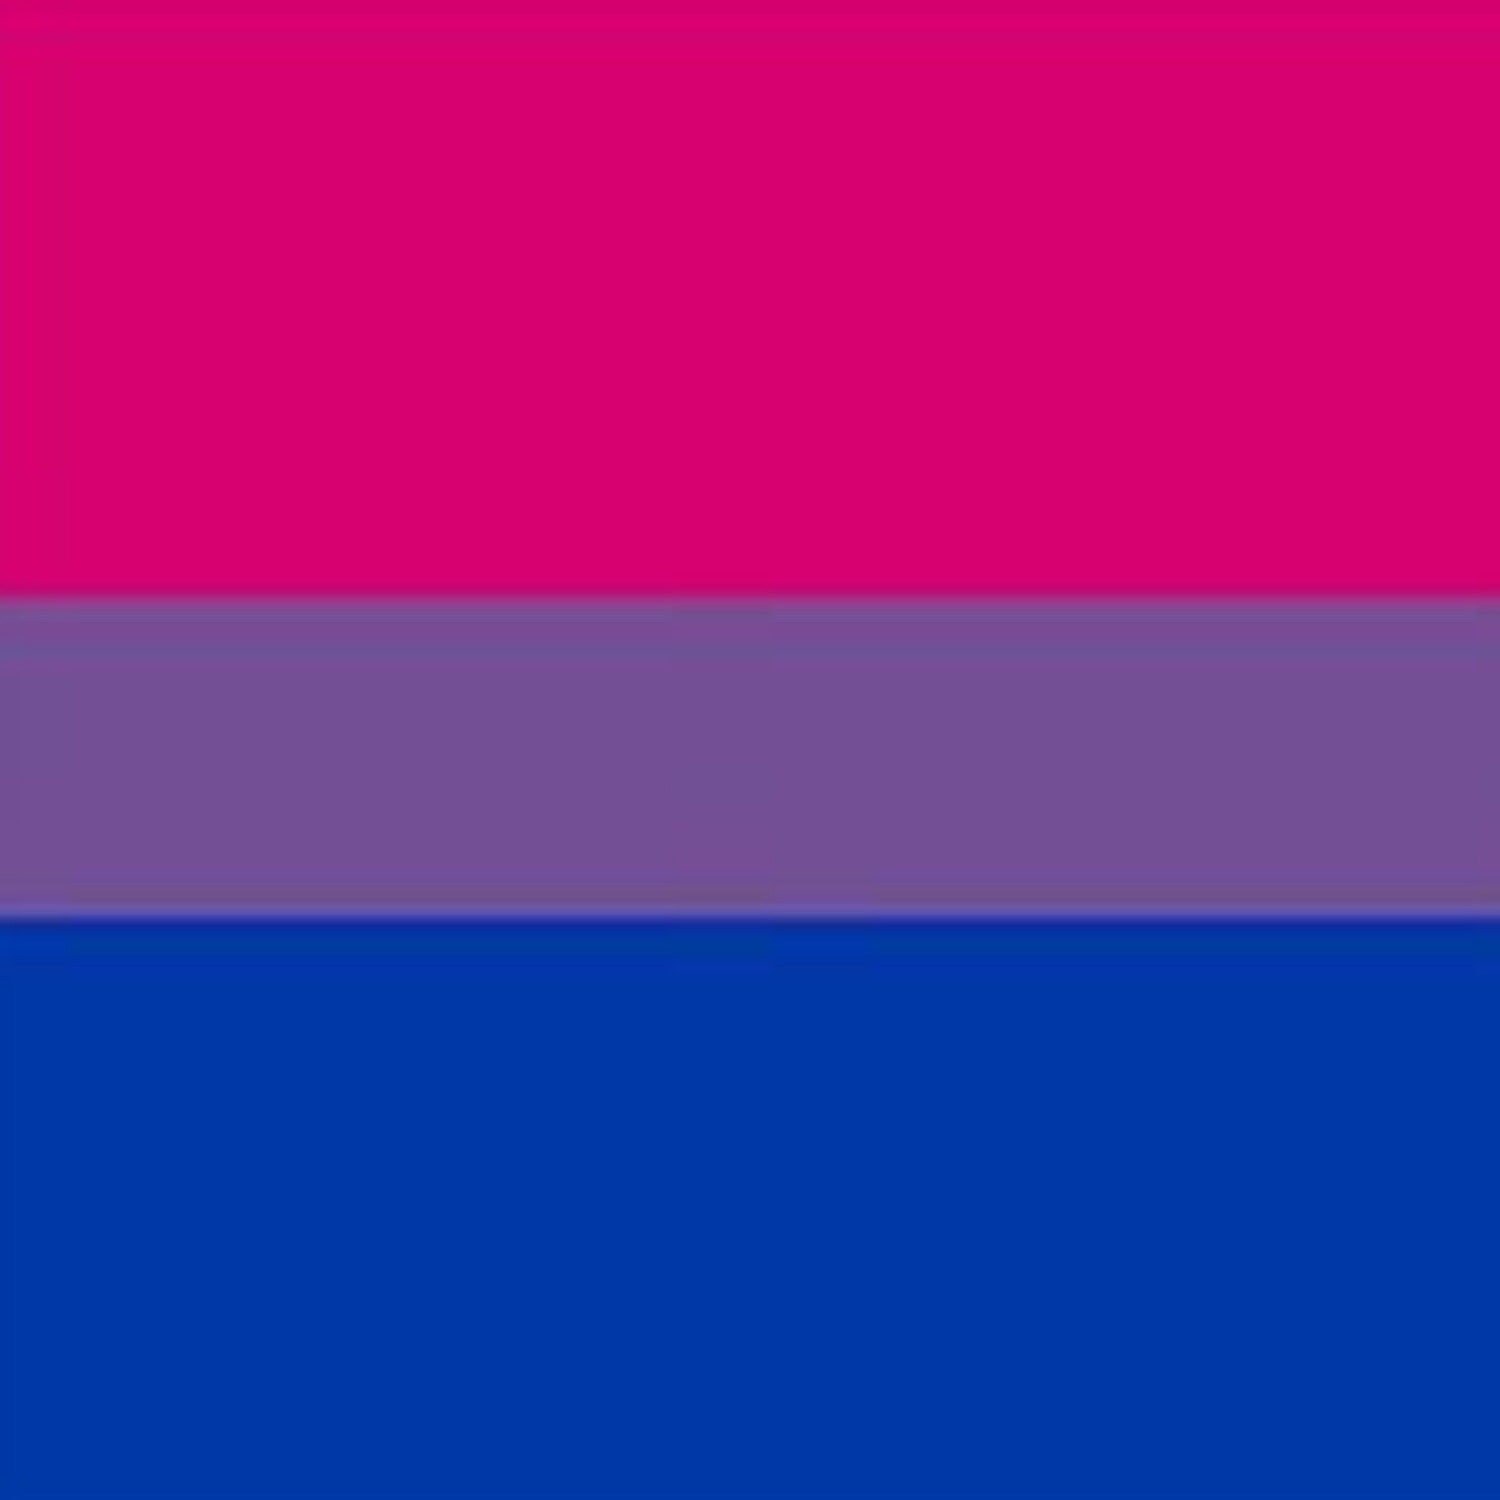 Bisexual Pride Flag, 1999.